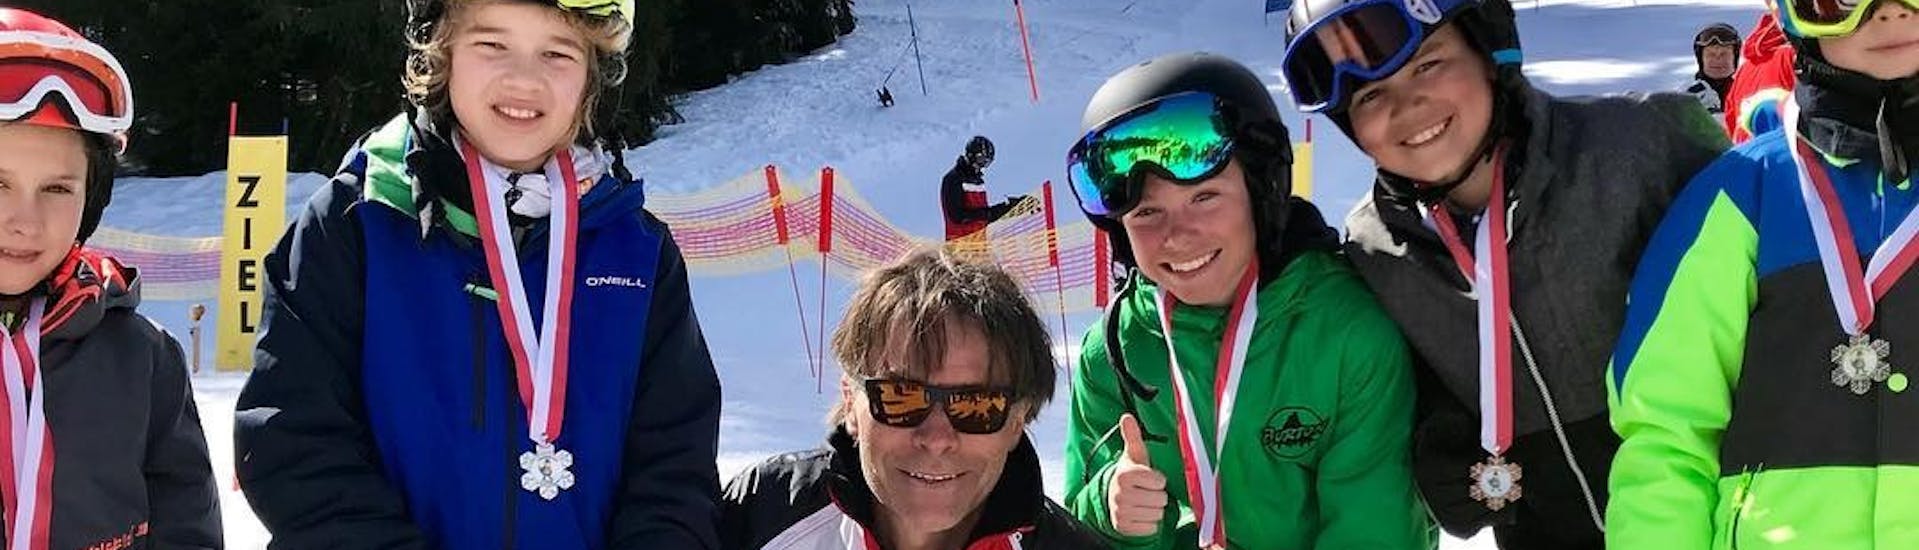 Kinderen met instructeur die hun medailles omhoog houden tijdens de kinderskilessen voor ervaren skiërs bij skischool Nova.